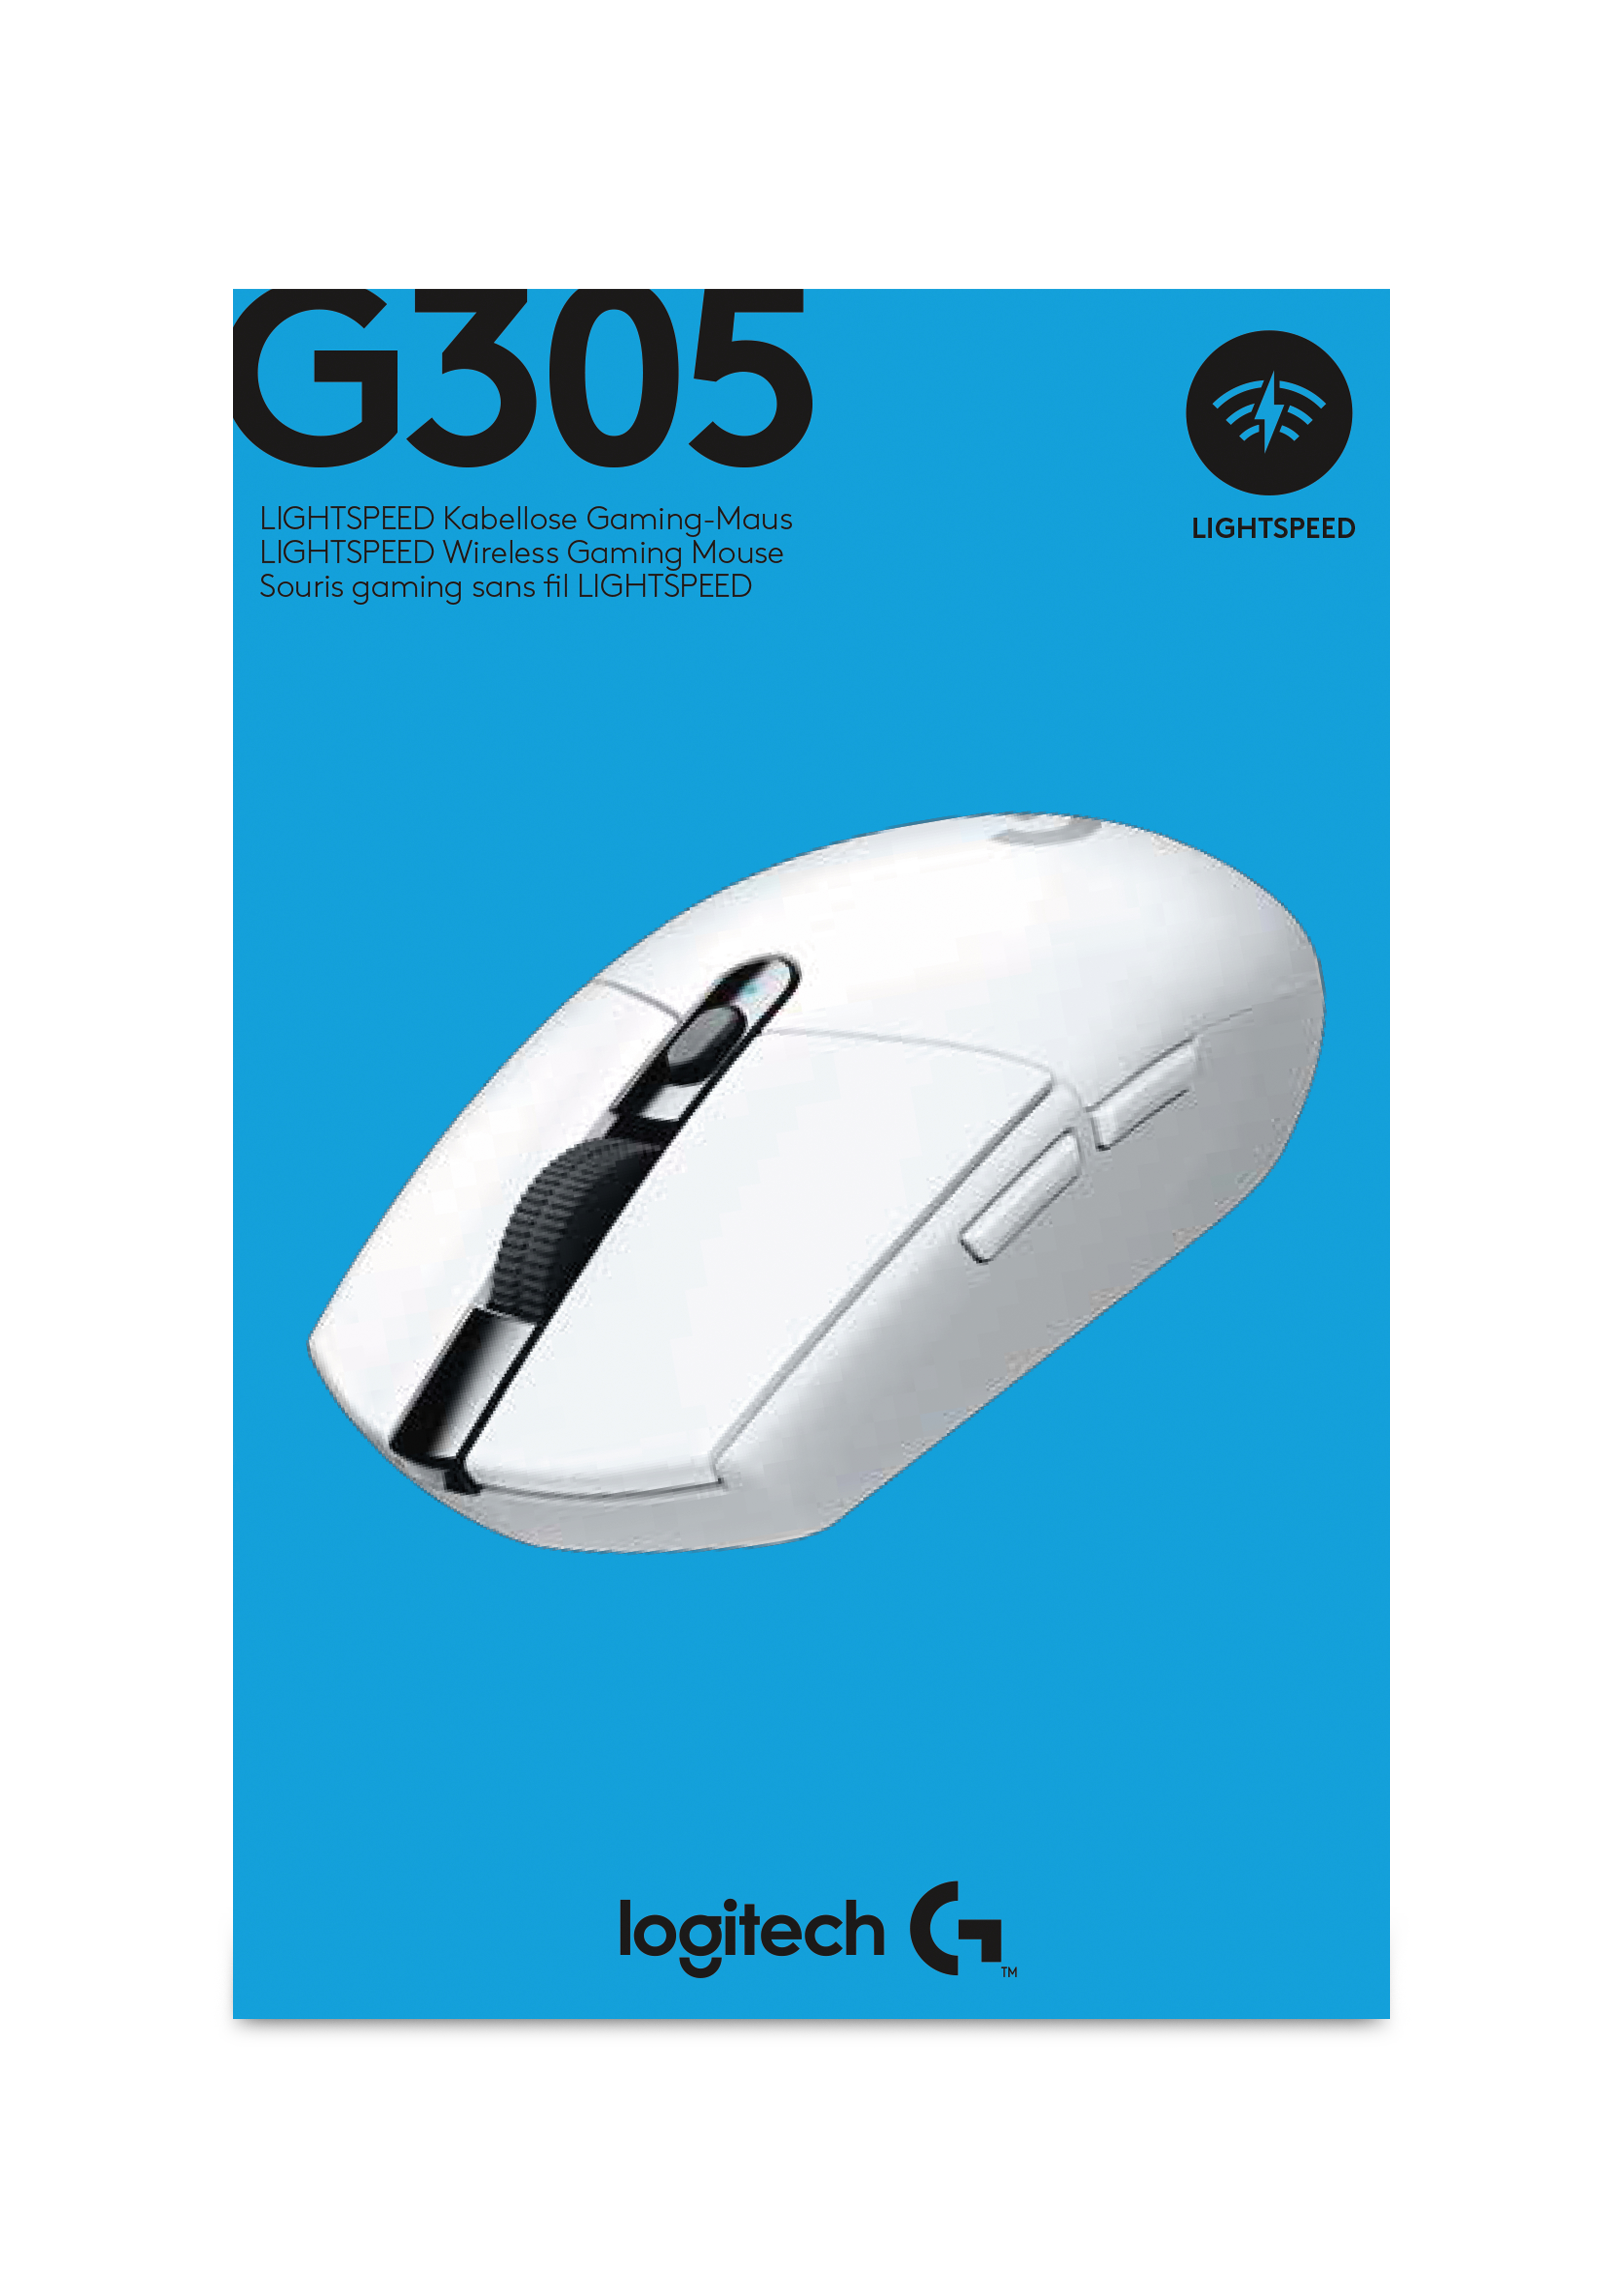 SOURIS LOGITECH G305 LightSpeed SANS FIL ( BLACK / WHITE